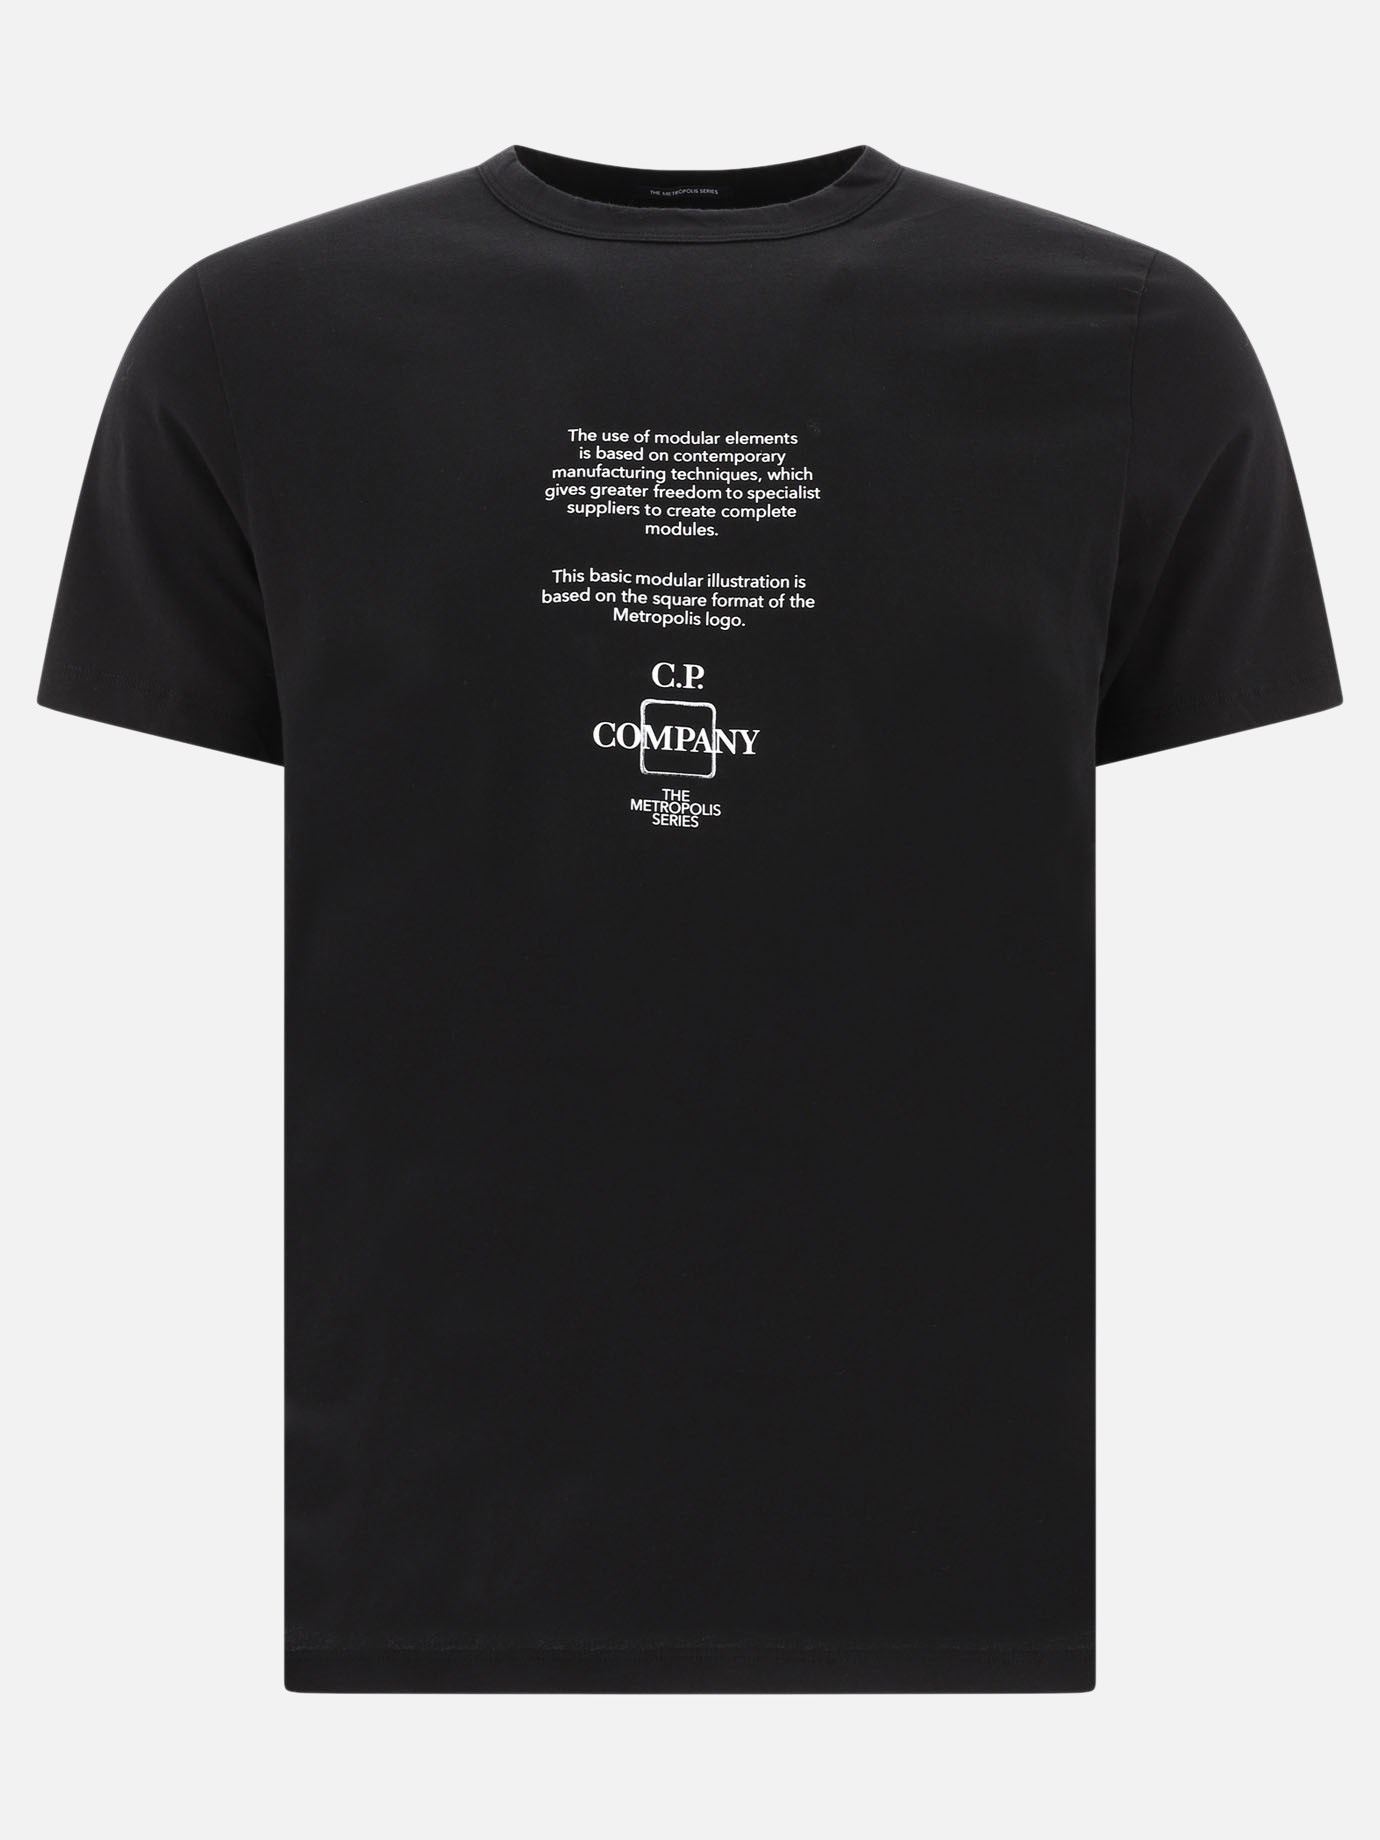  Maetropolis Series  t-shirt by C.P. Company